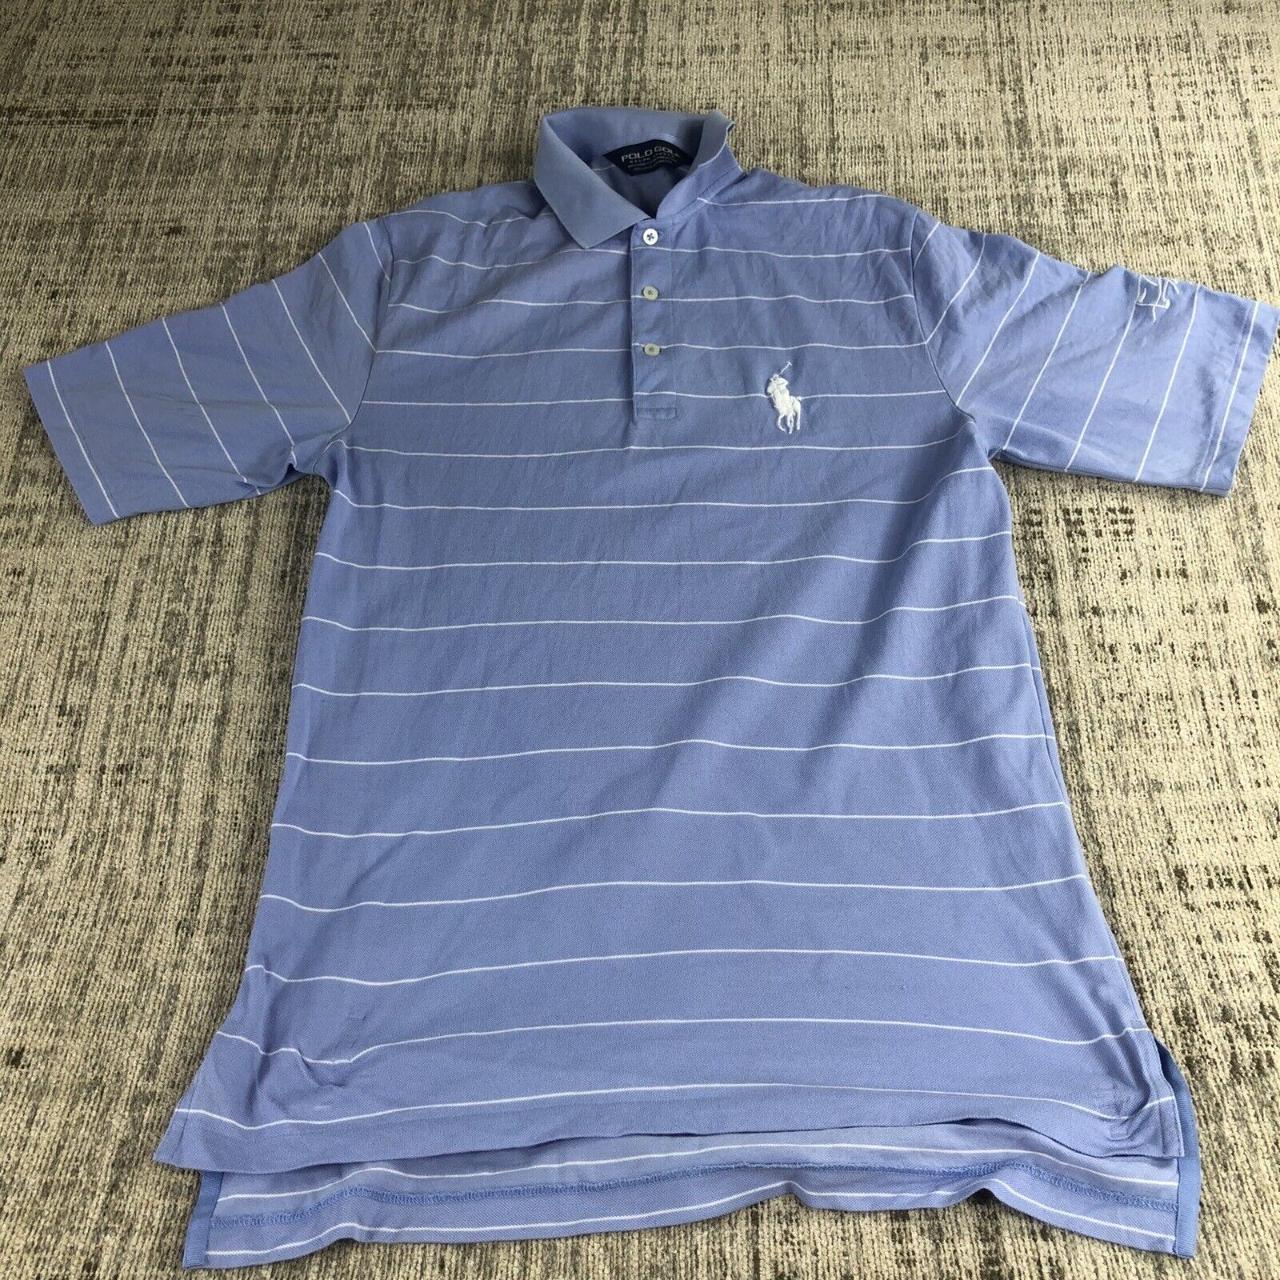 Ralph Lauren Polo Shirt Adult small Blue White Golf... - Depop